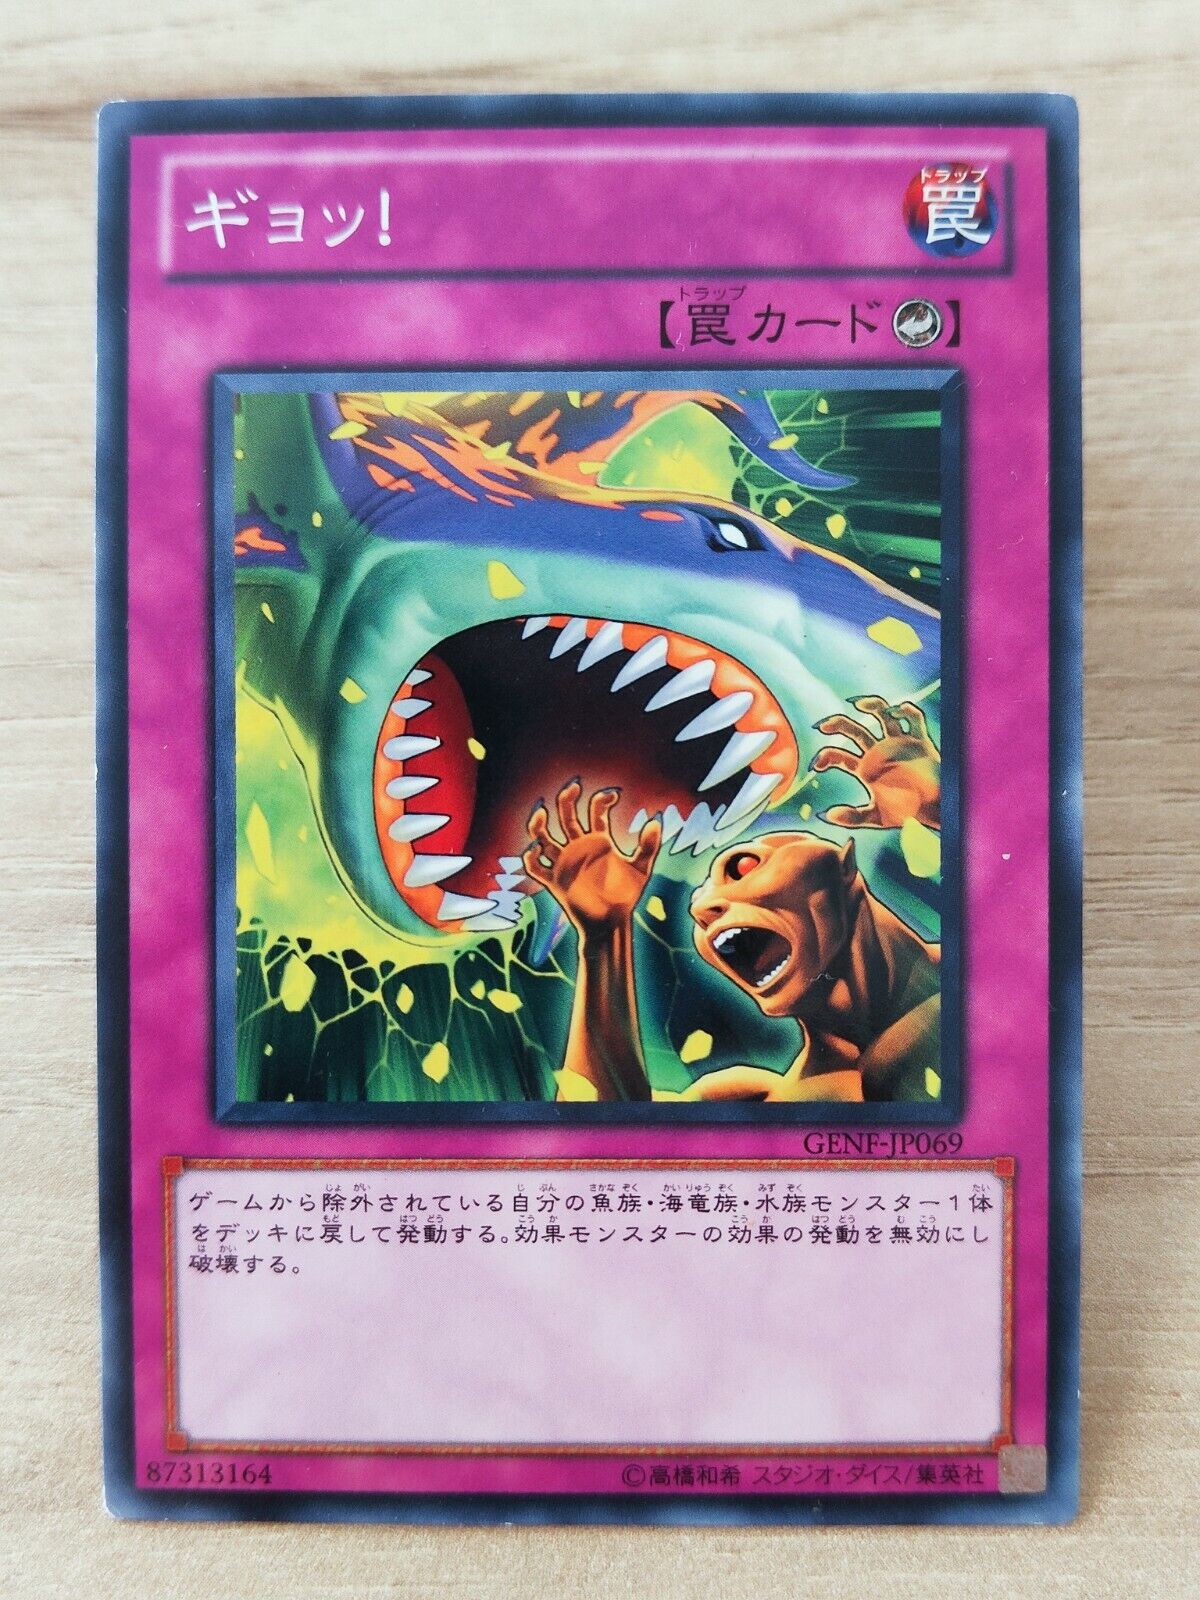 YU-GI-OH A79 Japanese Card Card Japan Konami Game - Oh Fsh - GENEVA-JP069